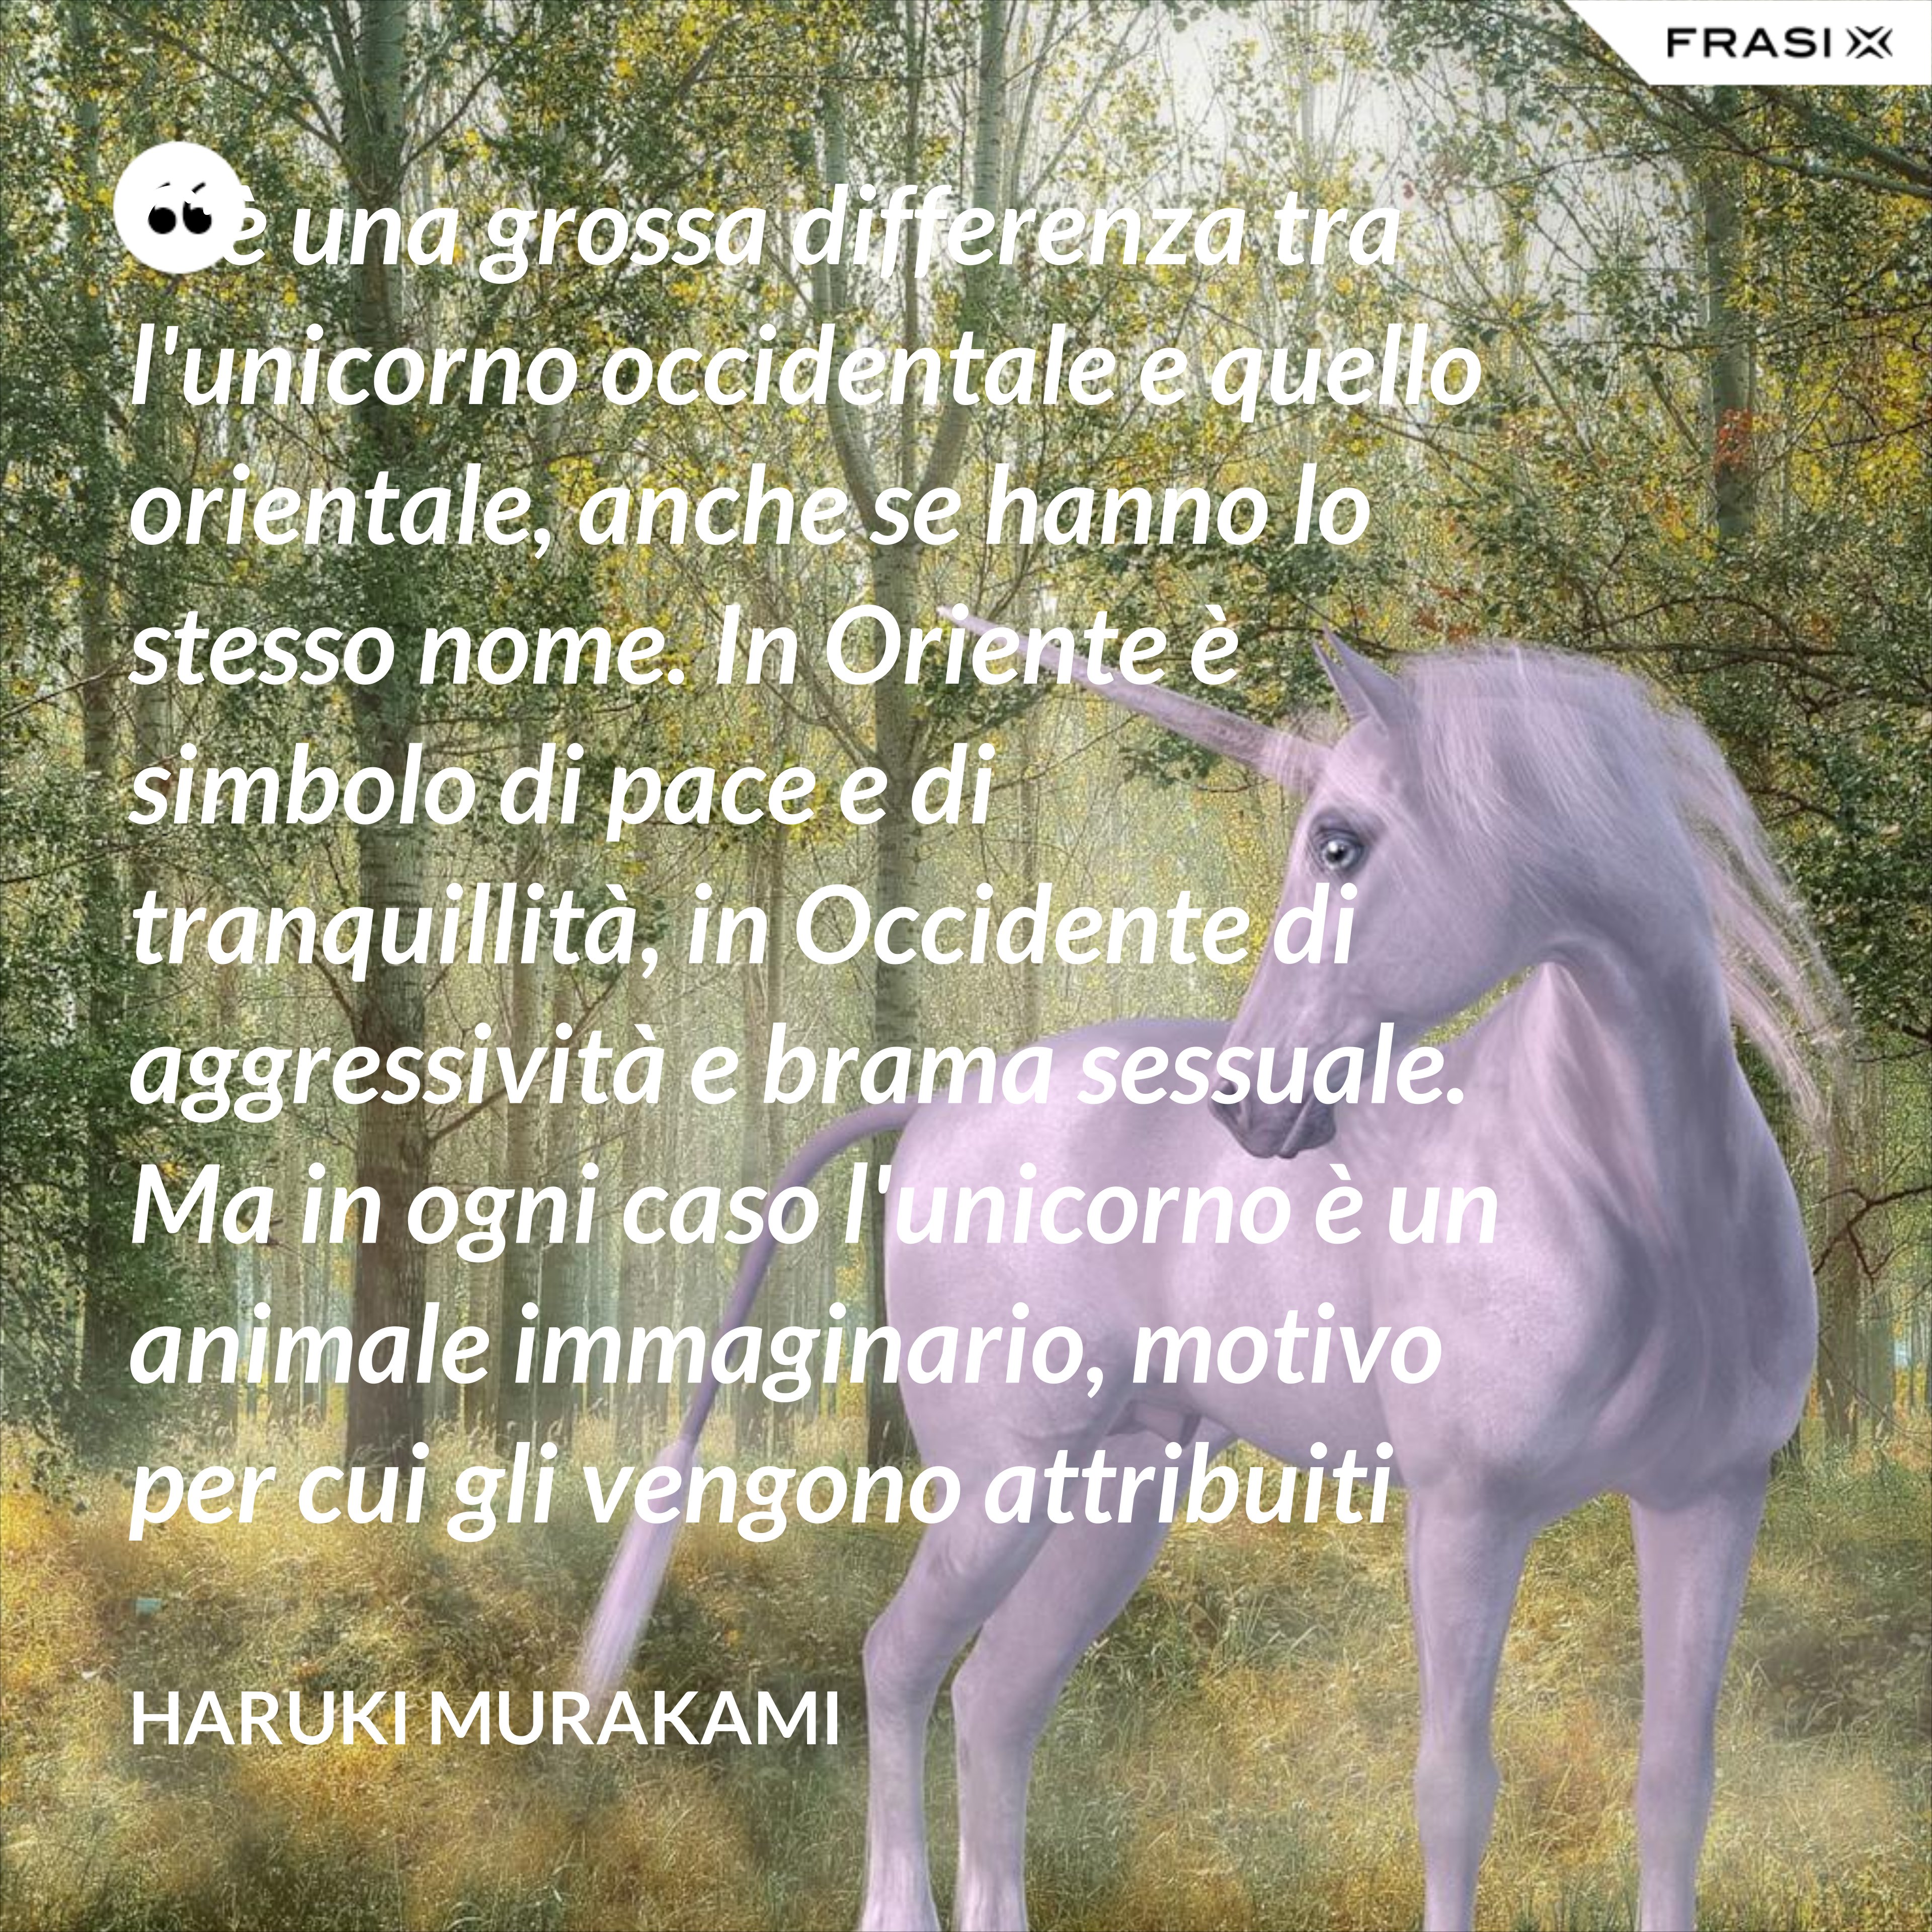 C'è una grossa differenza tra l'unicorno occidentale e quello orientale, anche se hanno lo stesso nome. In Oriente è simbolo di pace e di tranquillità, in Occidente di aggressività e brama sessuale. Ma in ogni caso l'unicorno è un animale immaginario, motivo per cui gli vengono attribuiti tanti significati. - Haruki Murakami